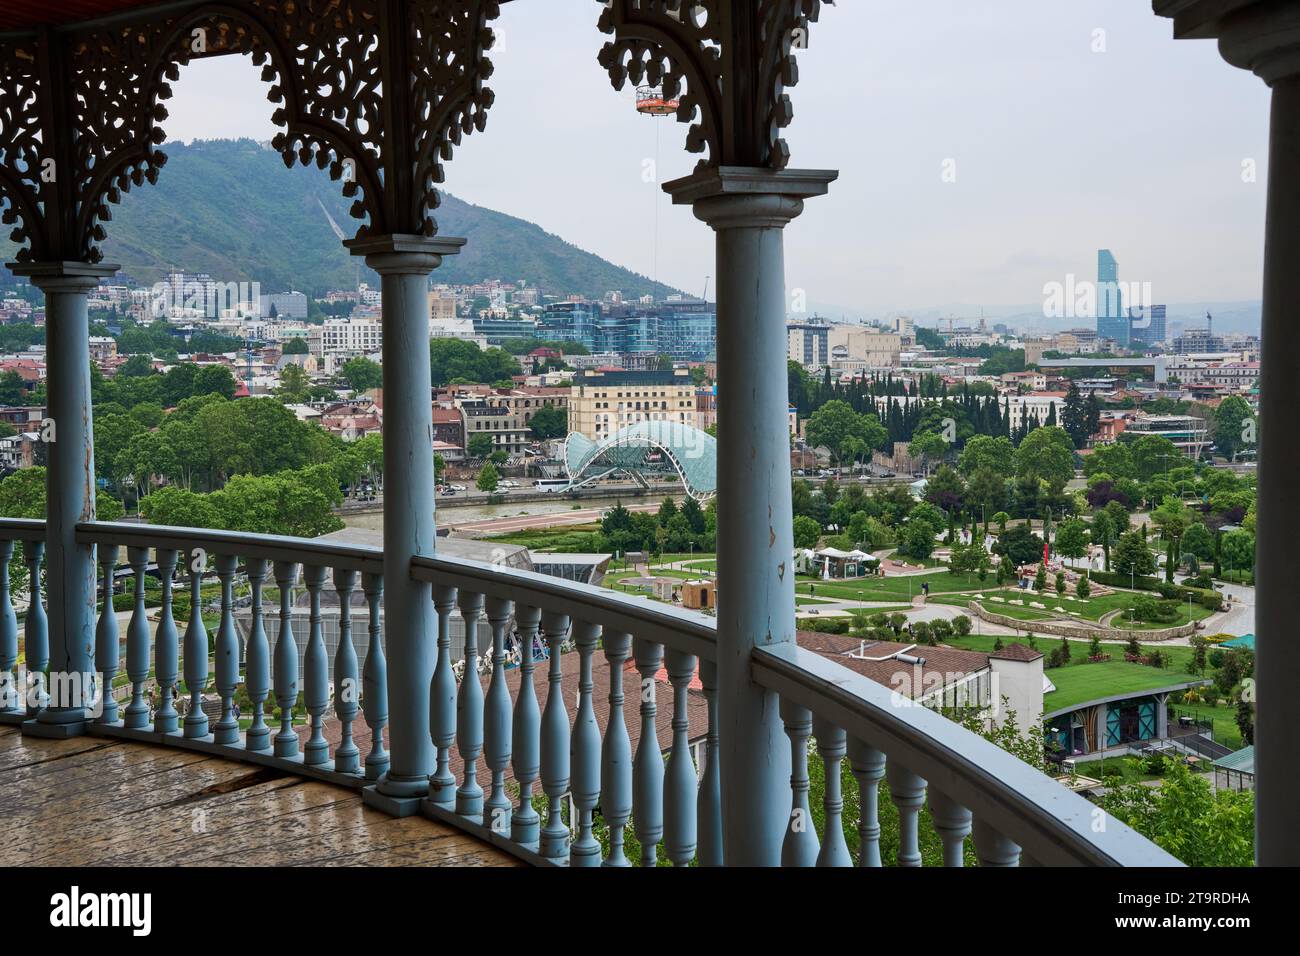 Blick auf den Rike-Park, vom Balkon von dem Satschino Palast, heute das Periszwaleba Nonnenkloster,  Awlabari, armenisches Viertel,  Tiflis, Georgien Stock Photo